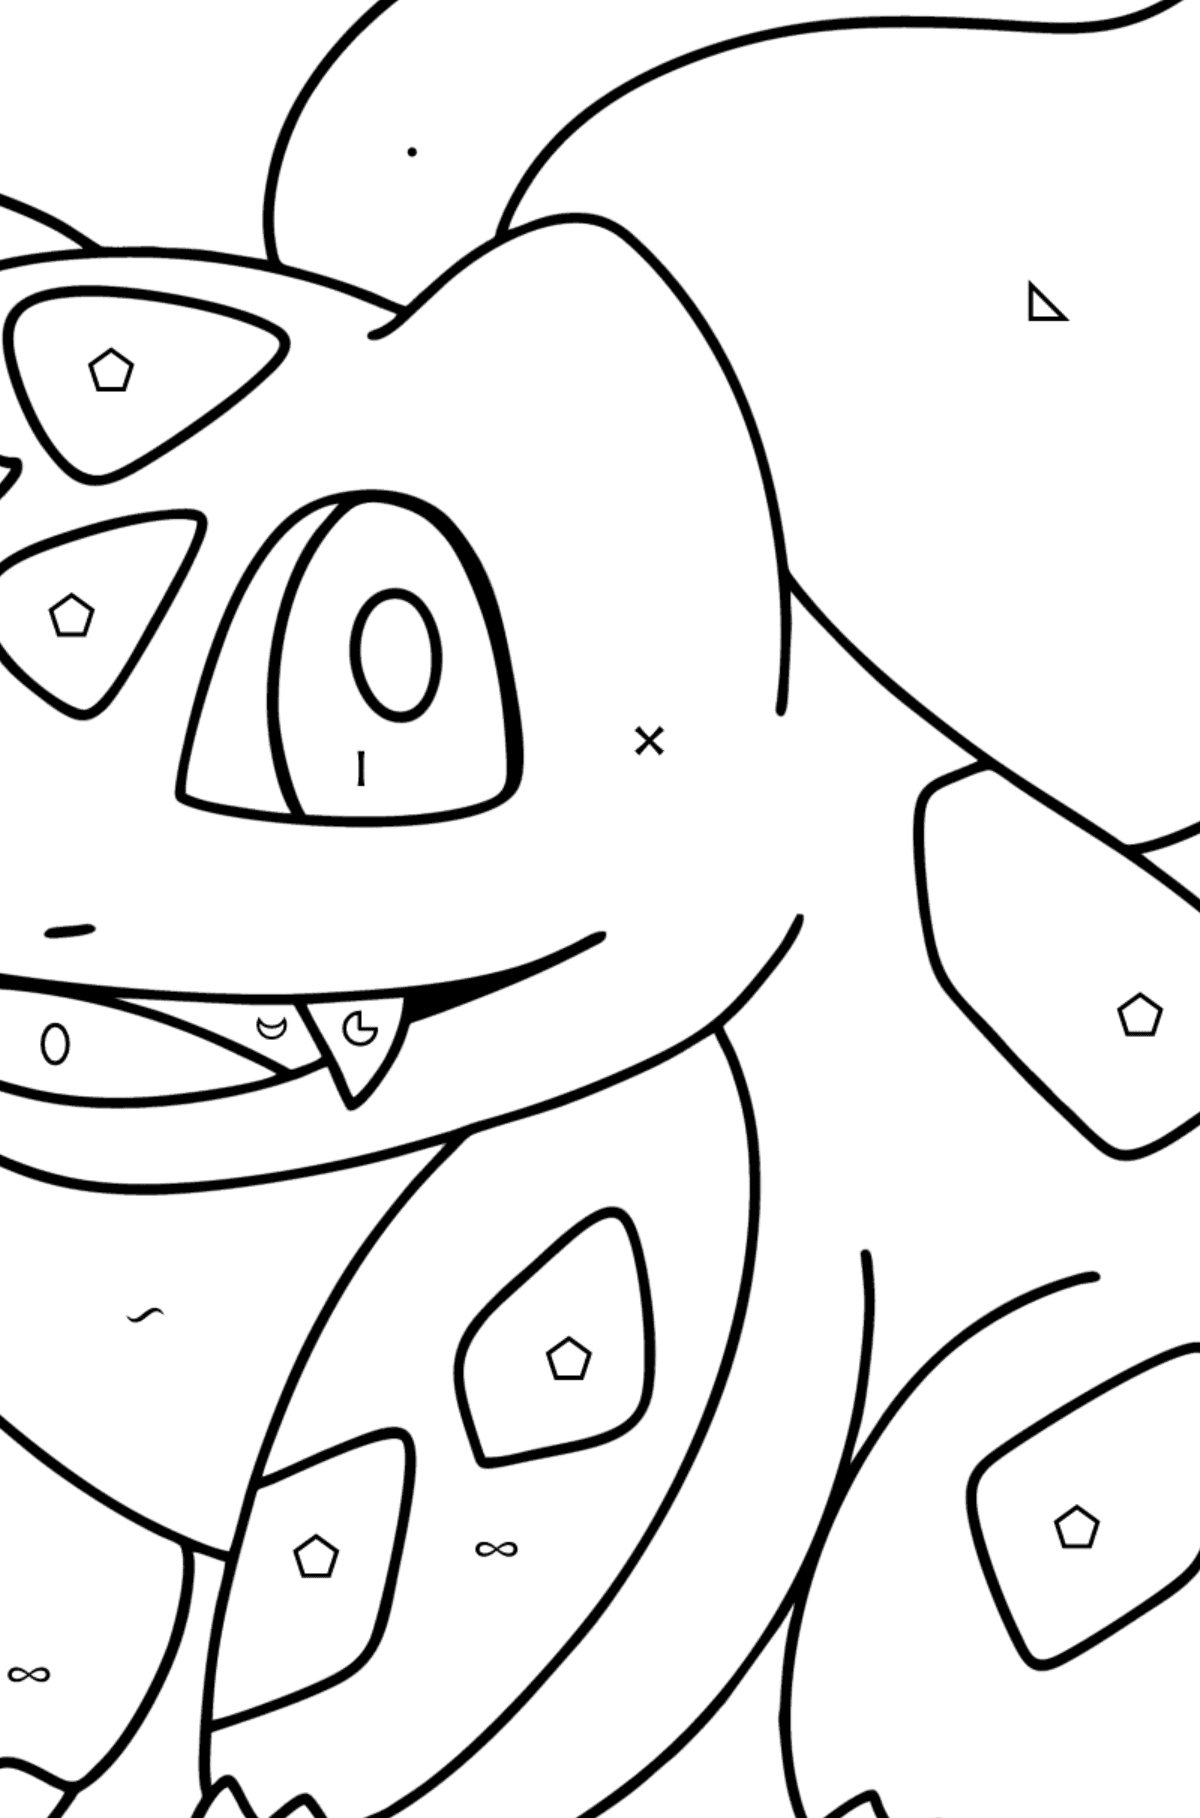 Tegning til farvning Pokémon Go Bulbasaur - farvelægning side efter symboler og geometriske former for børn